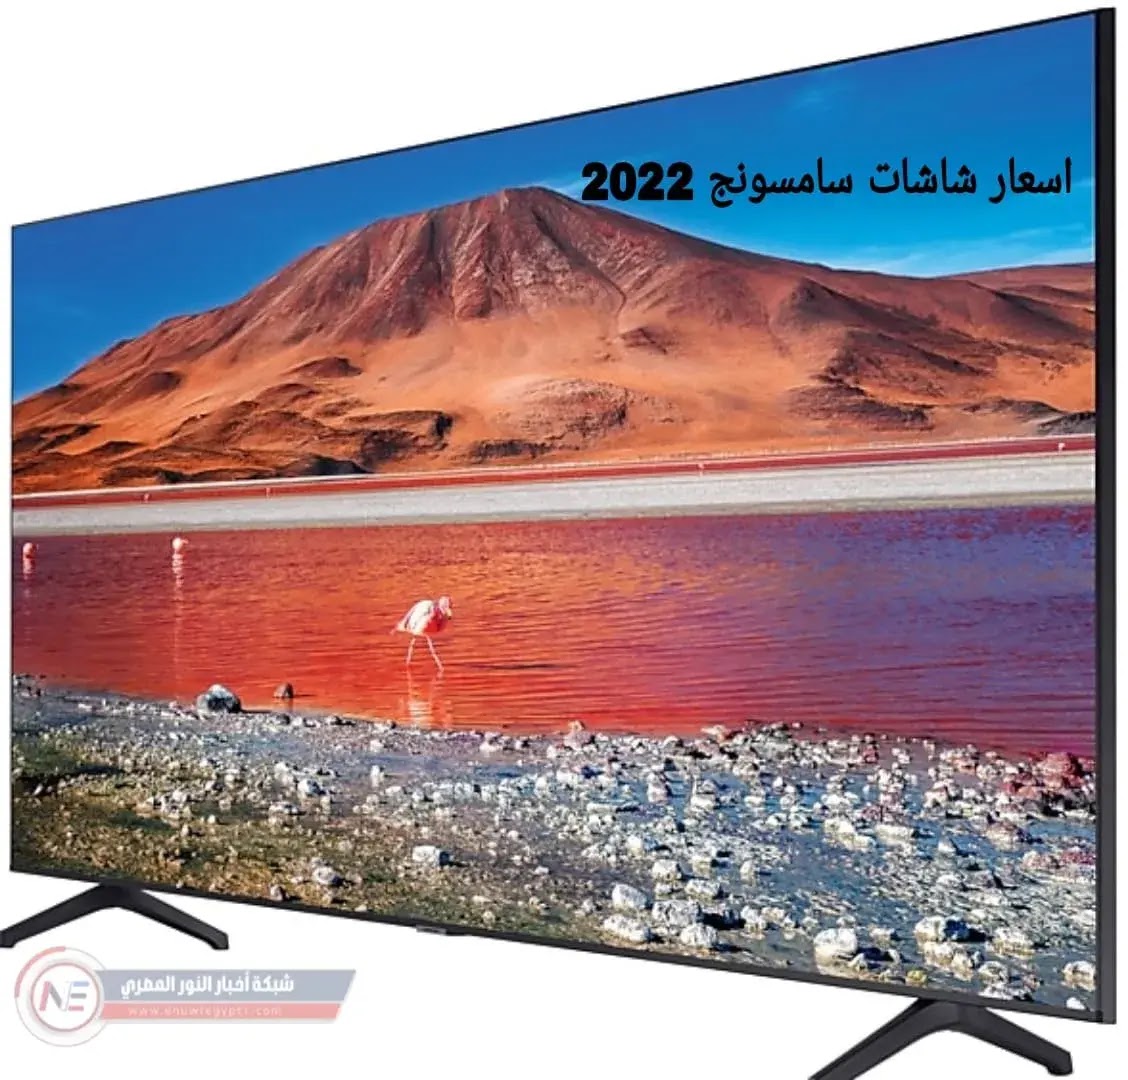 احدث اسعار شاشات سامسونج في مصر 2023 واهم المميزات المتوفرة بها -  التحديث الجديد لأسعار شاشات سامسونج 2023 لحظة بلحظة